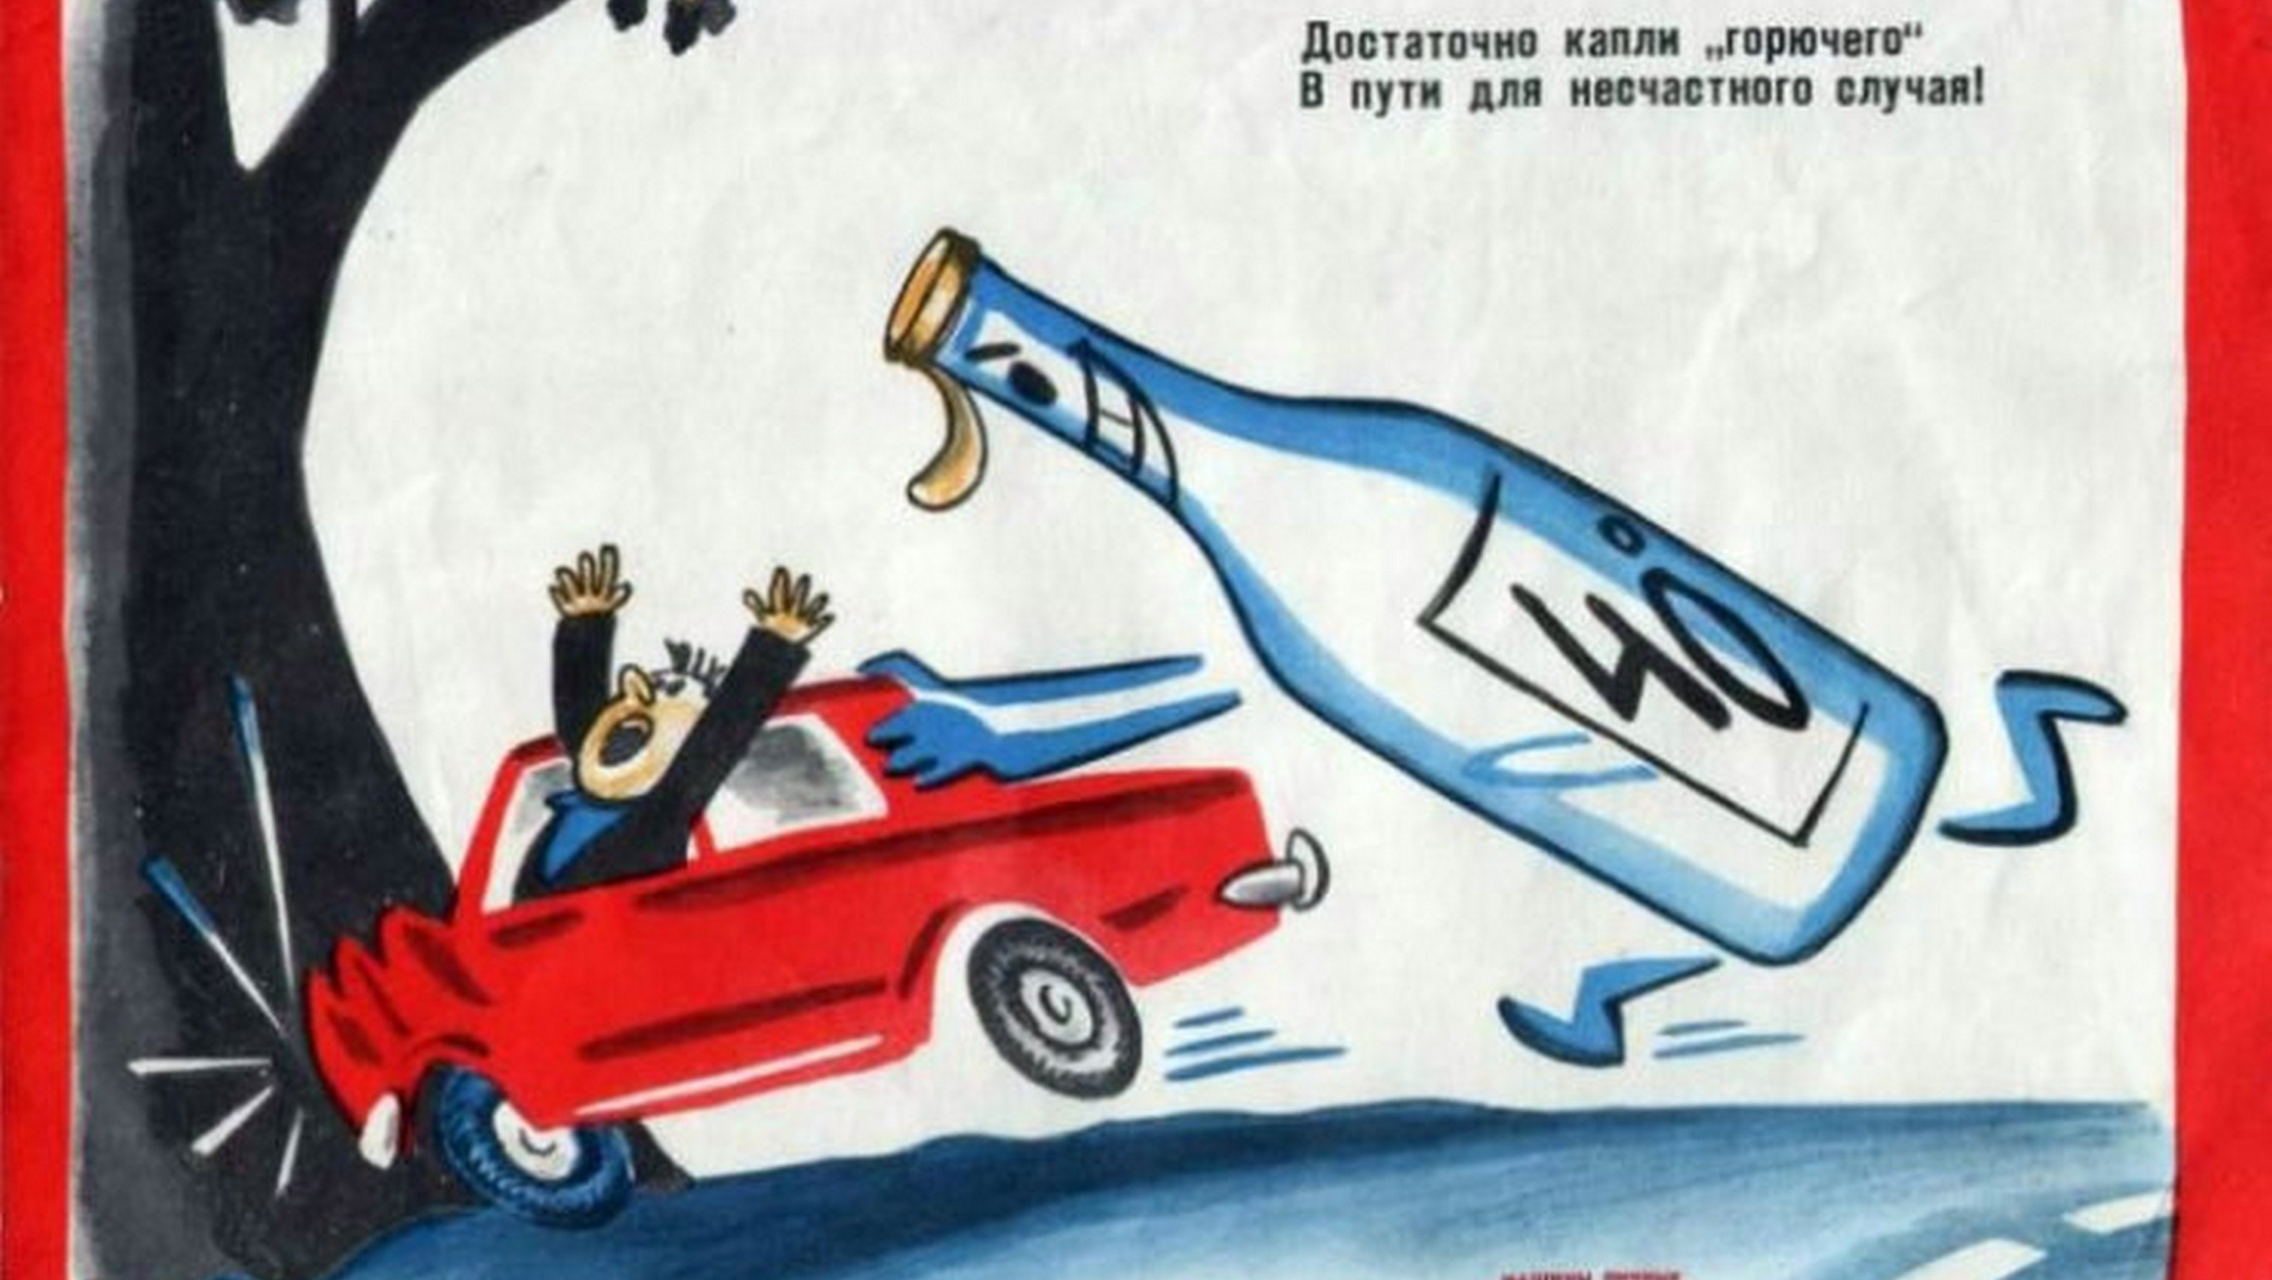 Советский плакат. Достаточно капли горючего в пути для несчастного случая